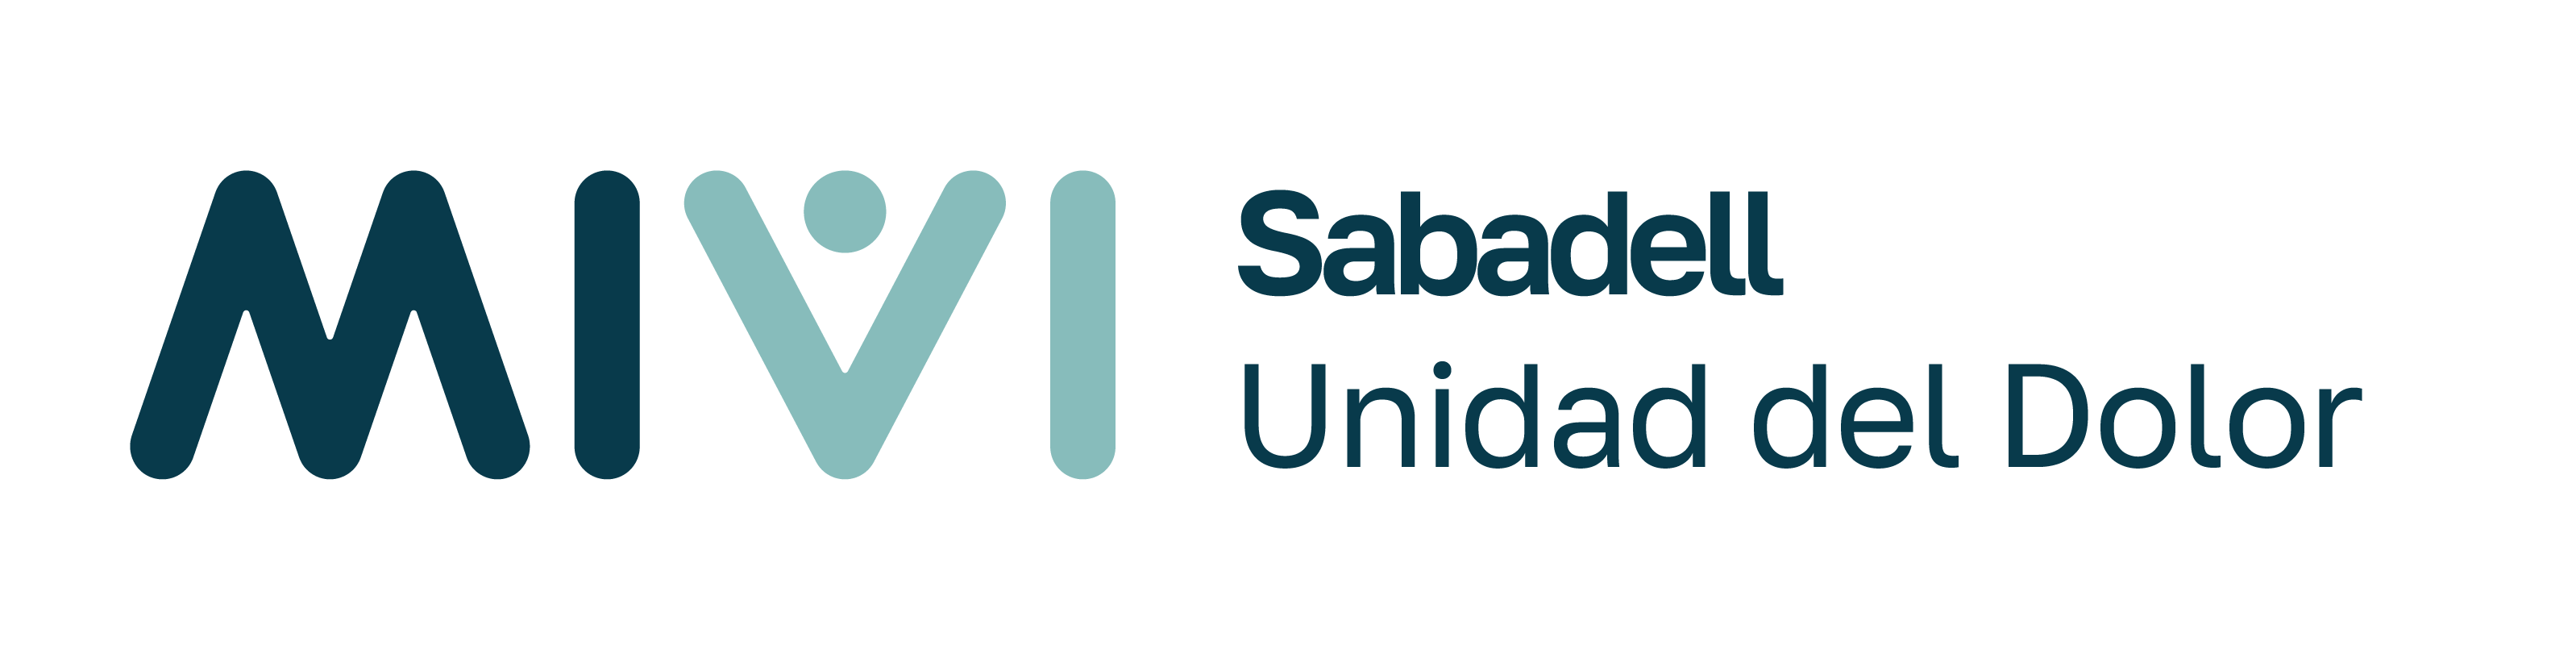 Material corporativo completo_Sabadell_Logo descriptor (1)